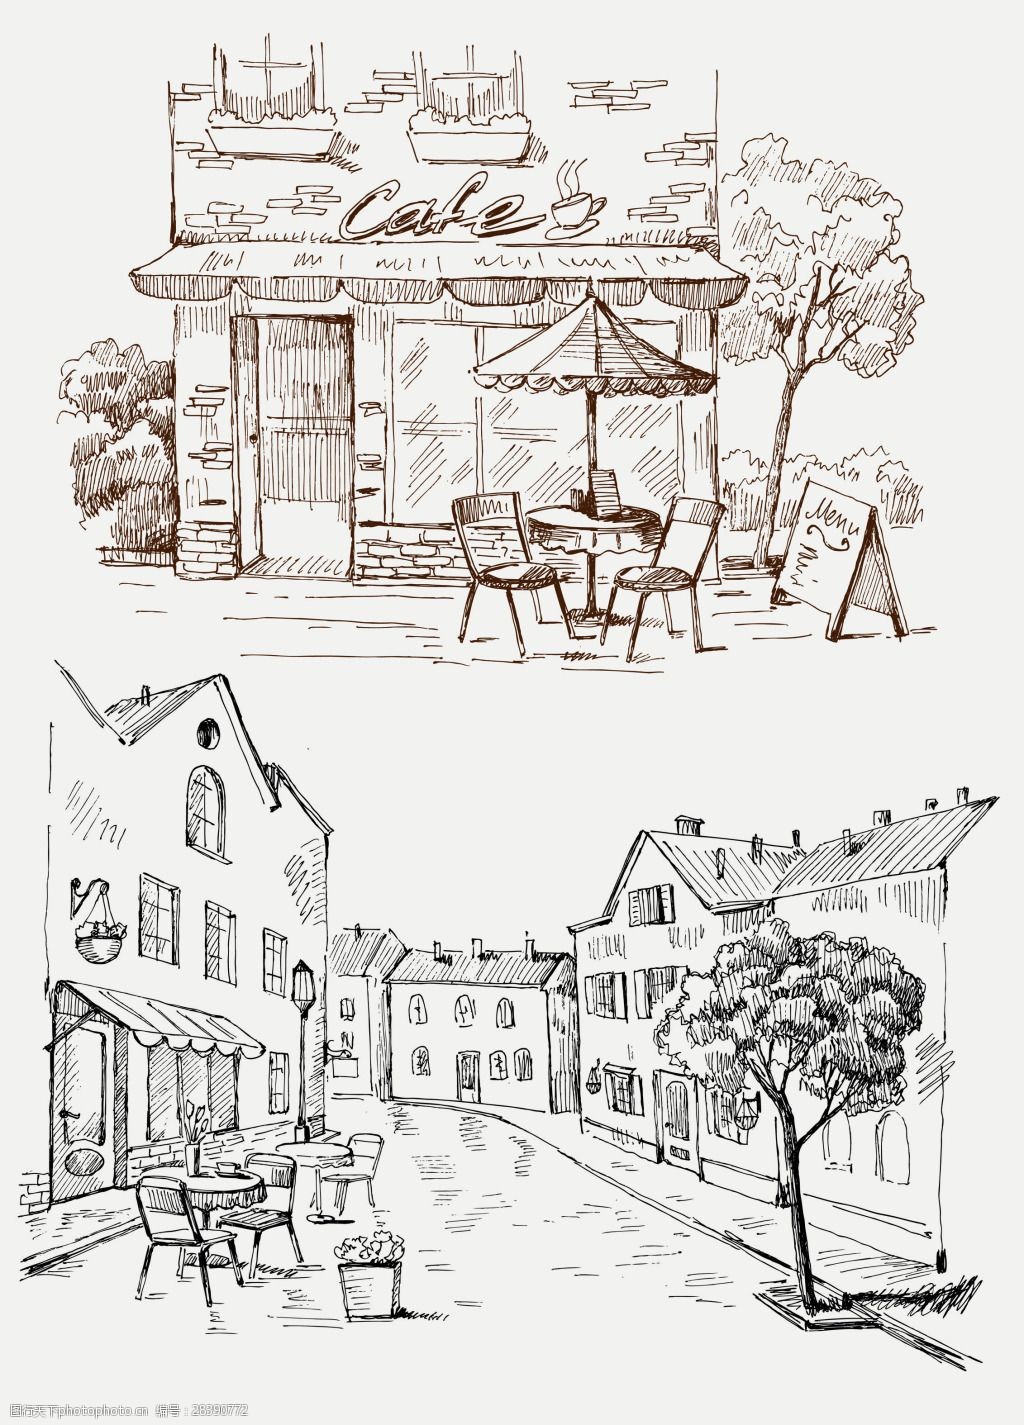 关键词:手绘速写风格咖啡厅 创意 风景 插画 手绘 速写 街道 咖啡厅